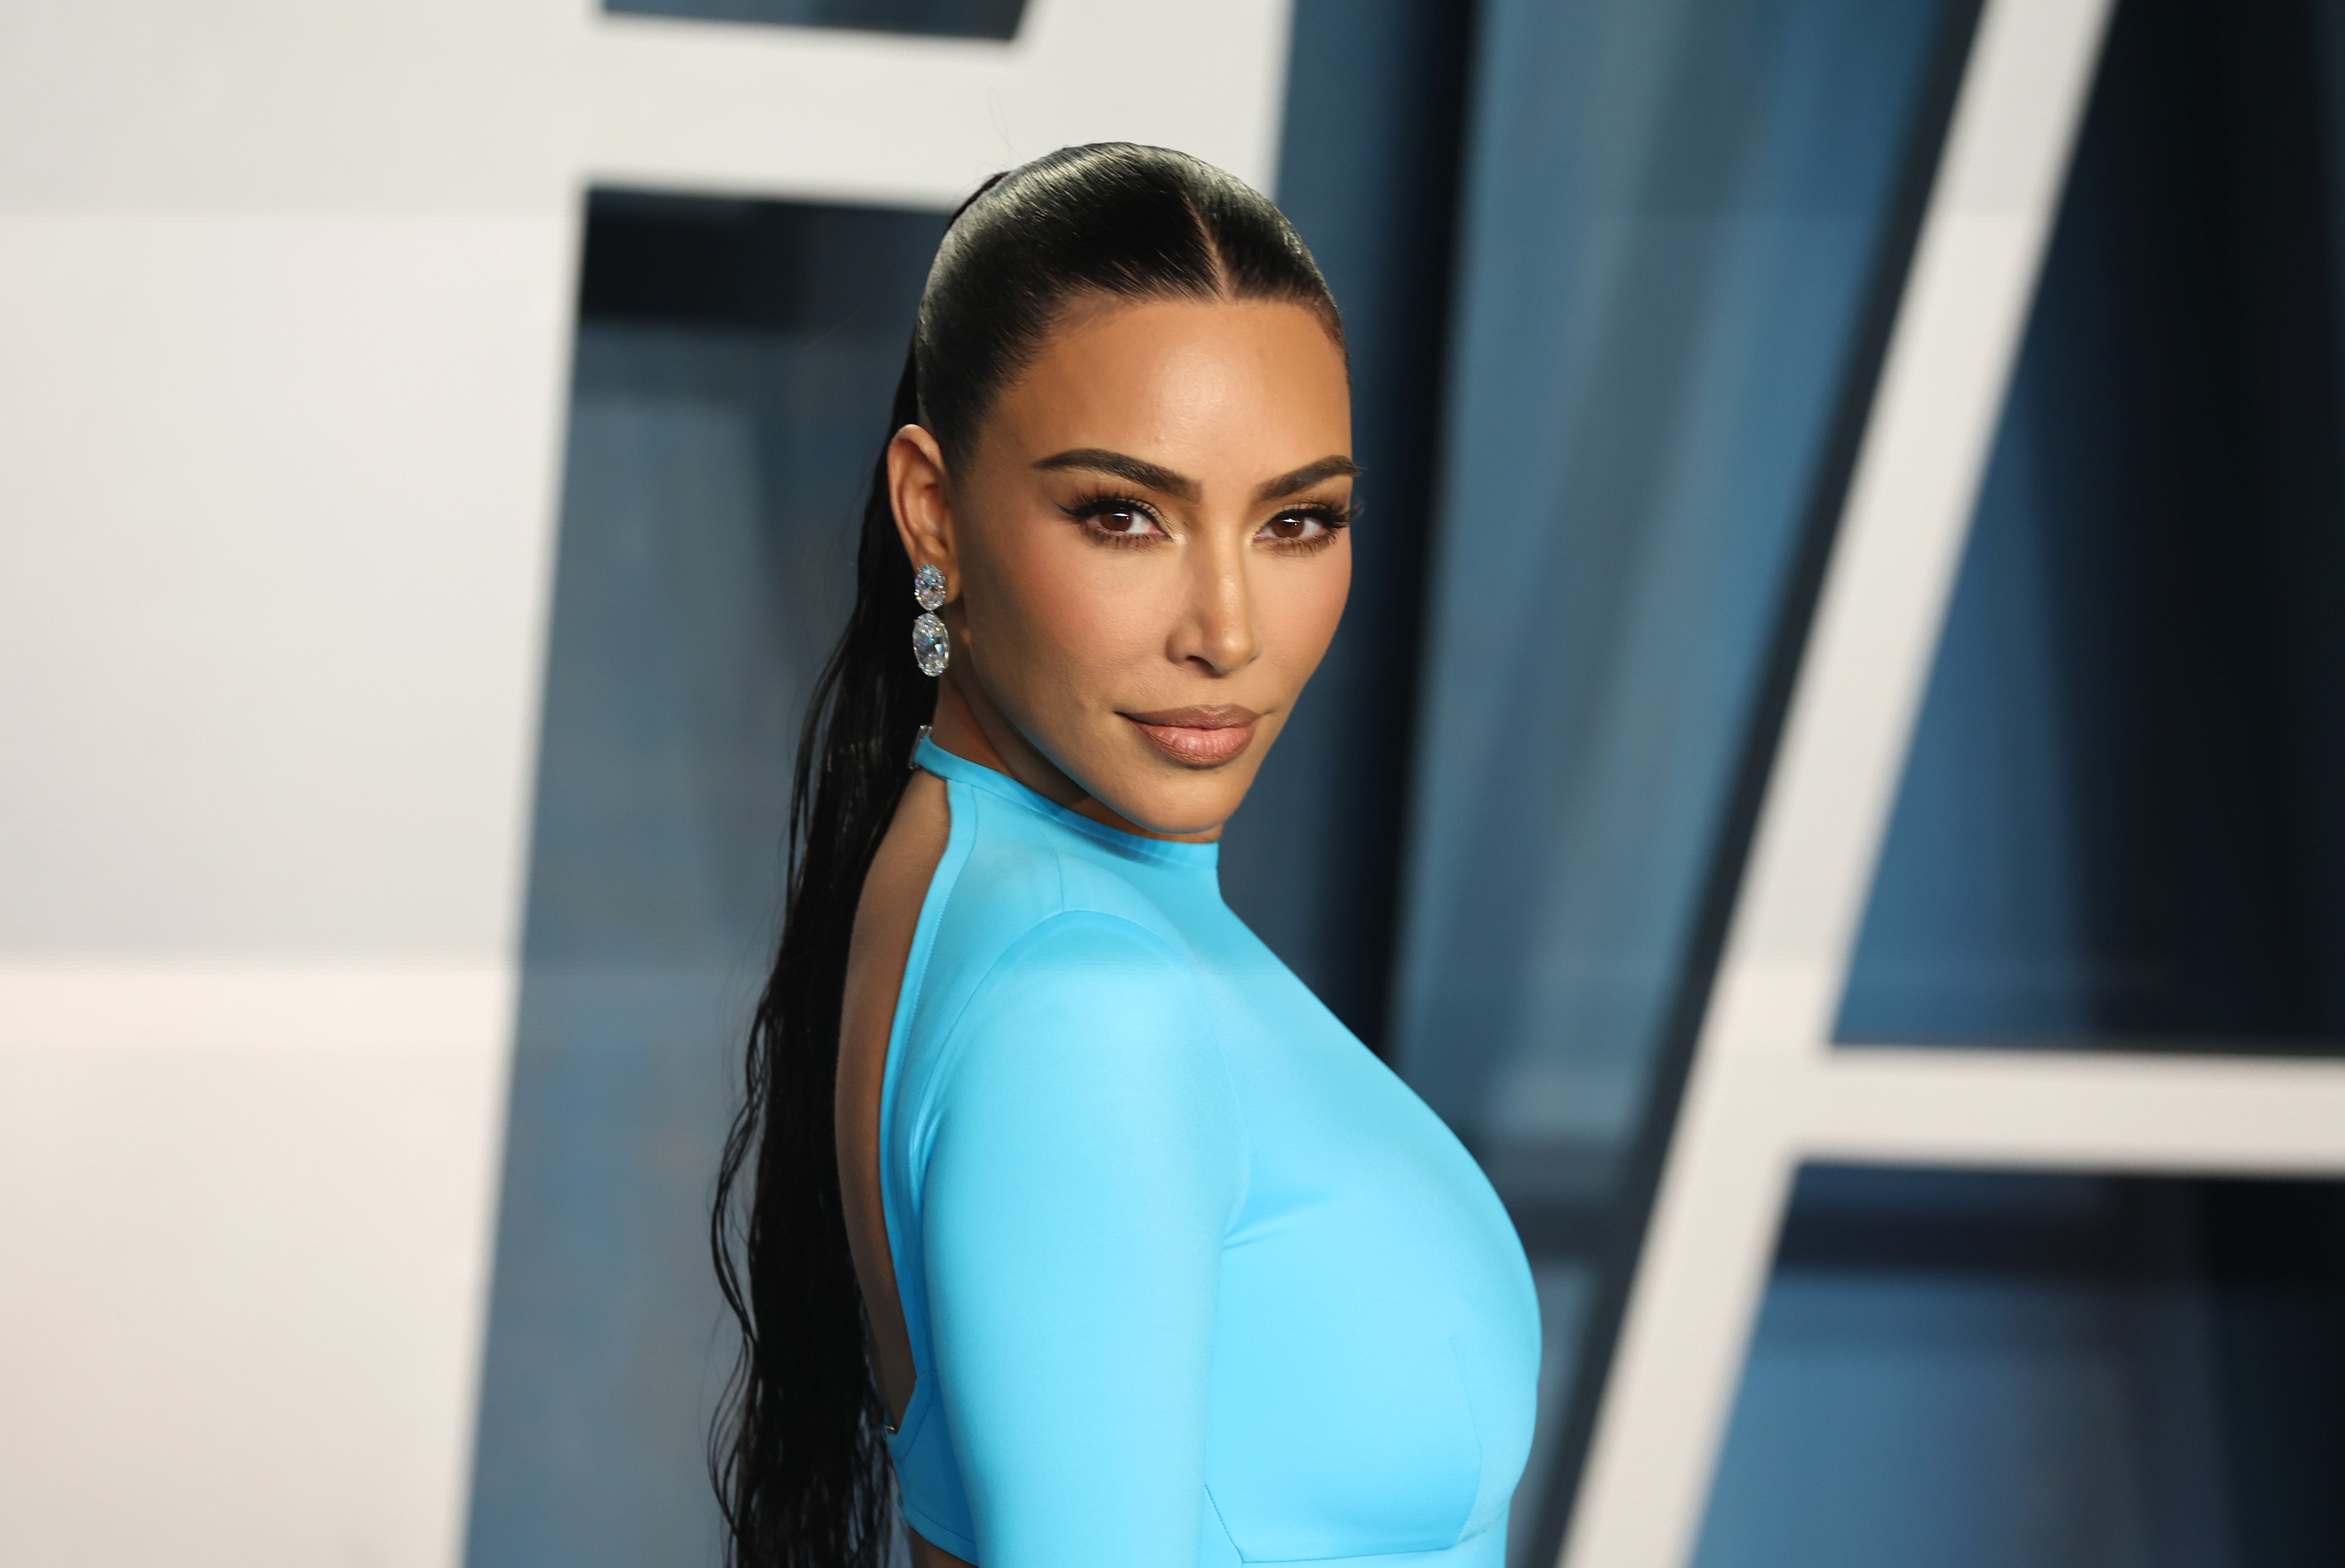 What Is Kim Kardashian's Net Worth?